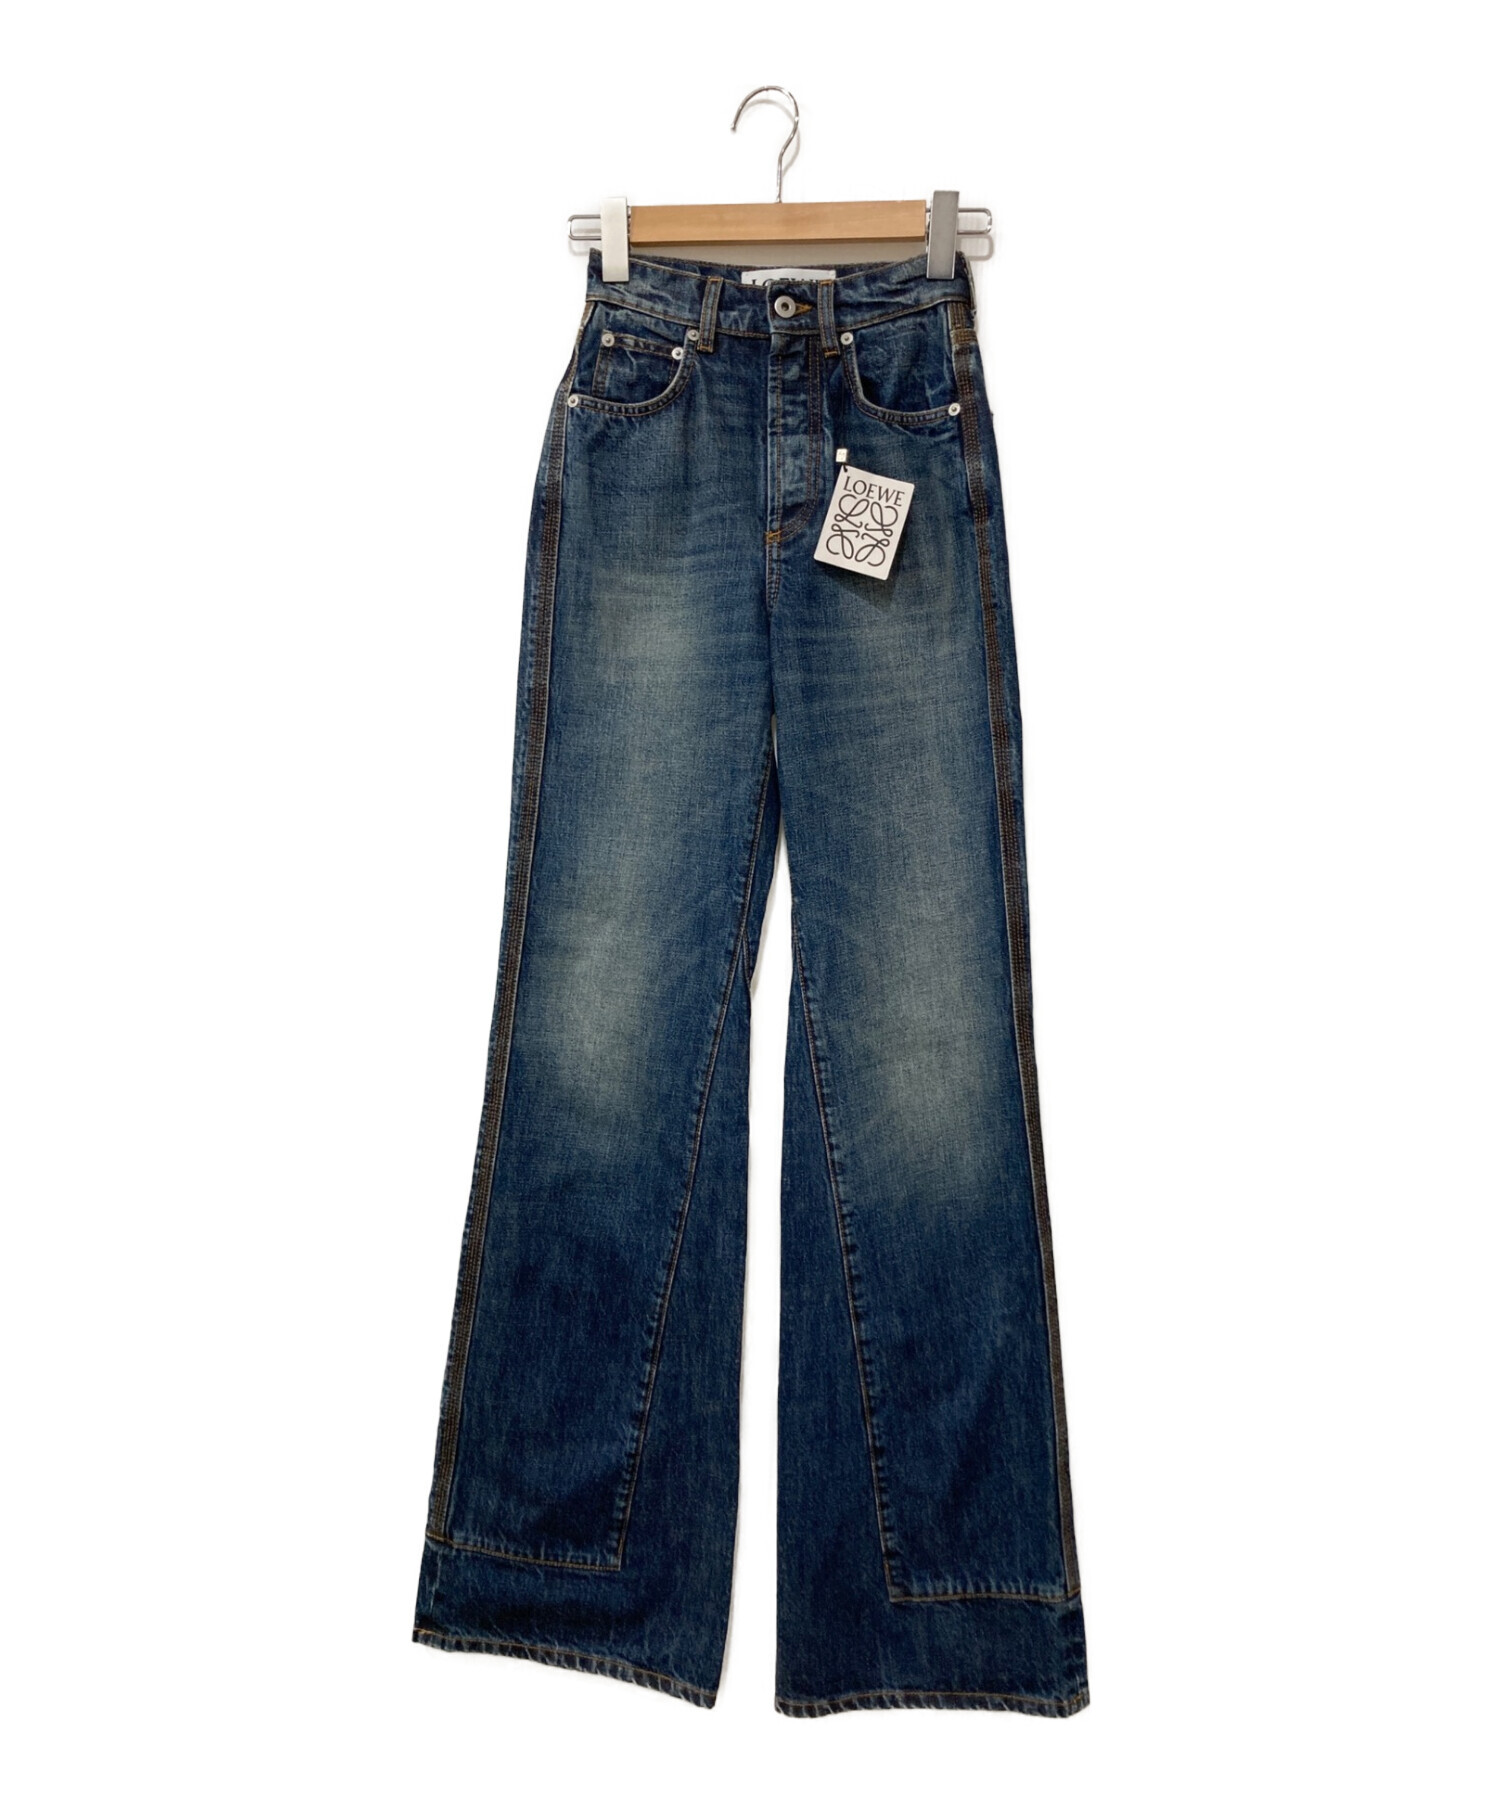 30,780円Loewe jeans 32 サイズ